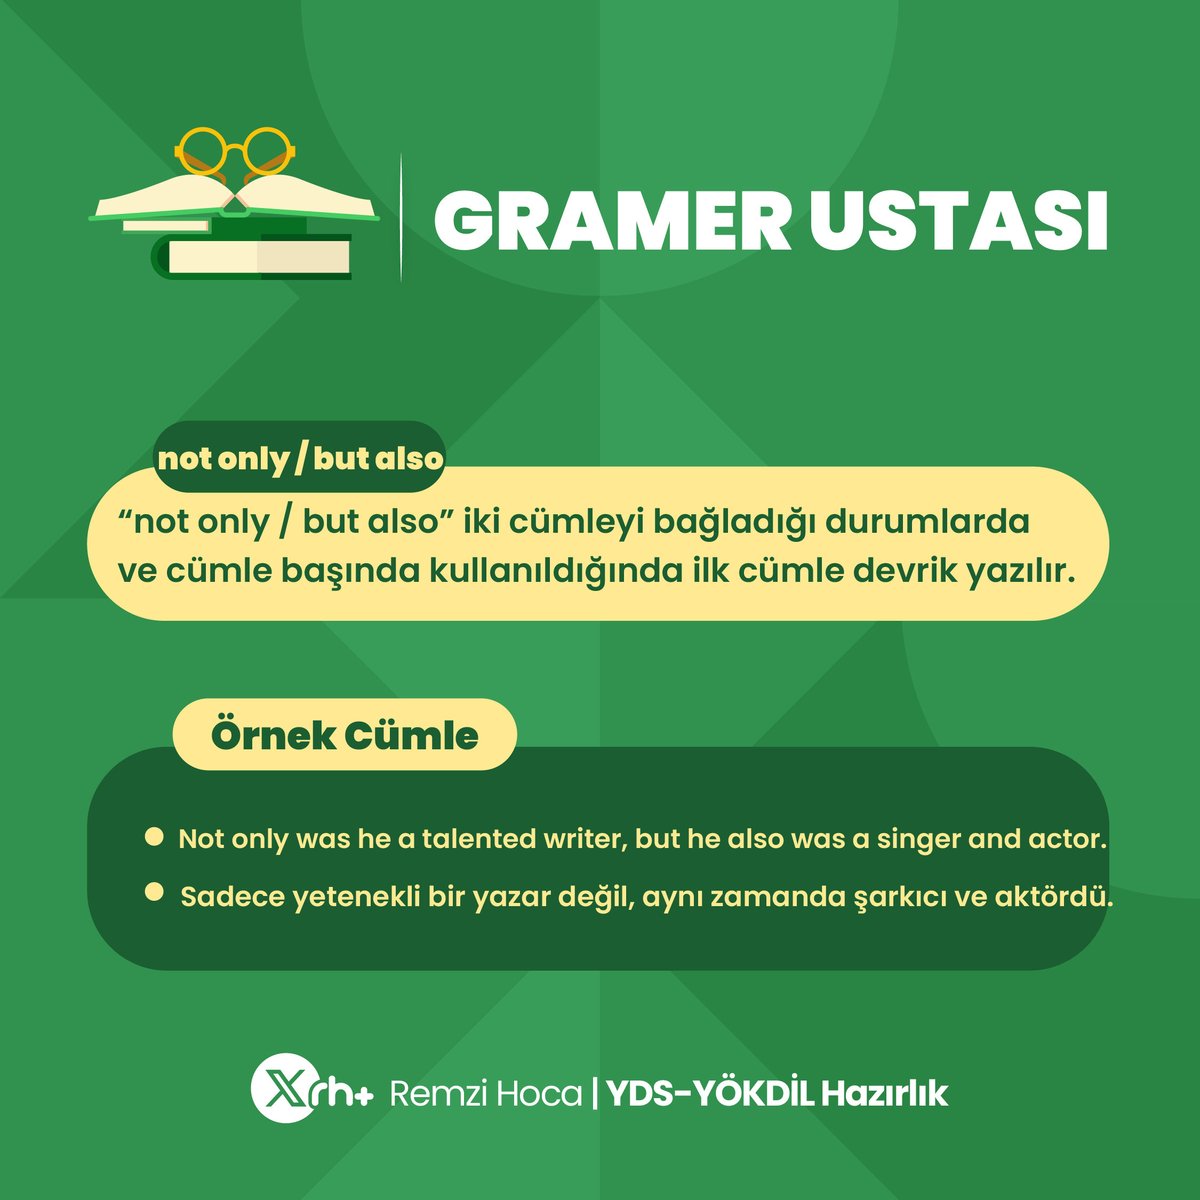 Gramer çalışmasını istediğin arkadaşını etiketle! 🤓
#grammar 
#ydskursu
#yökdilkursu
#remzihoca